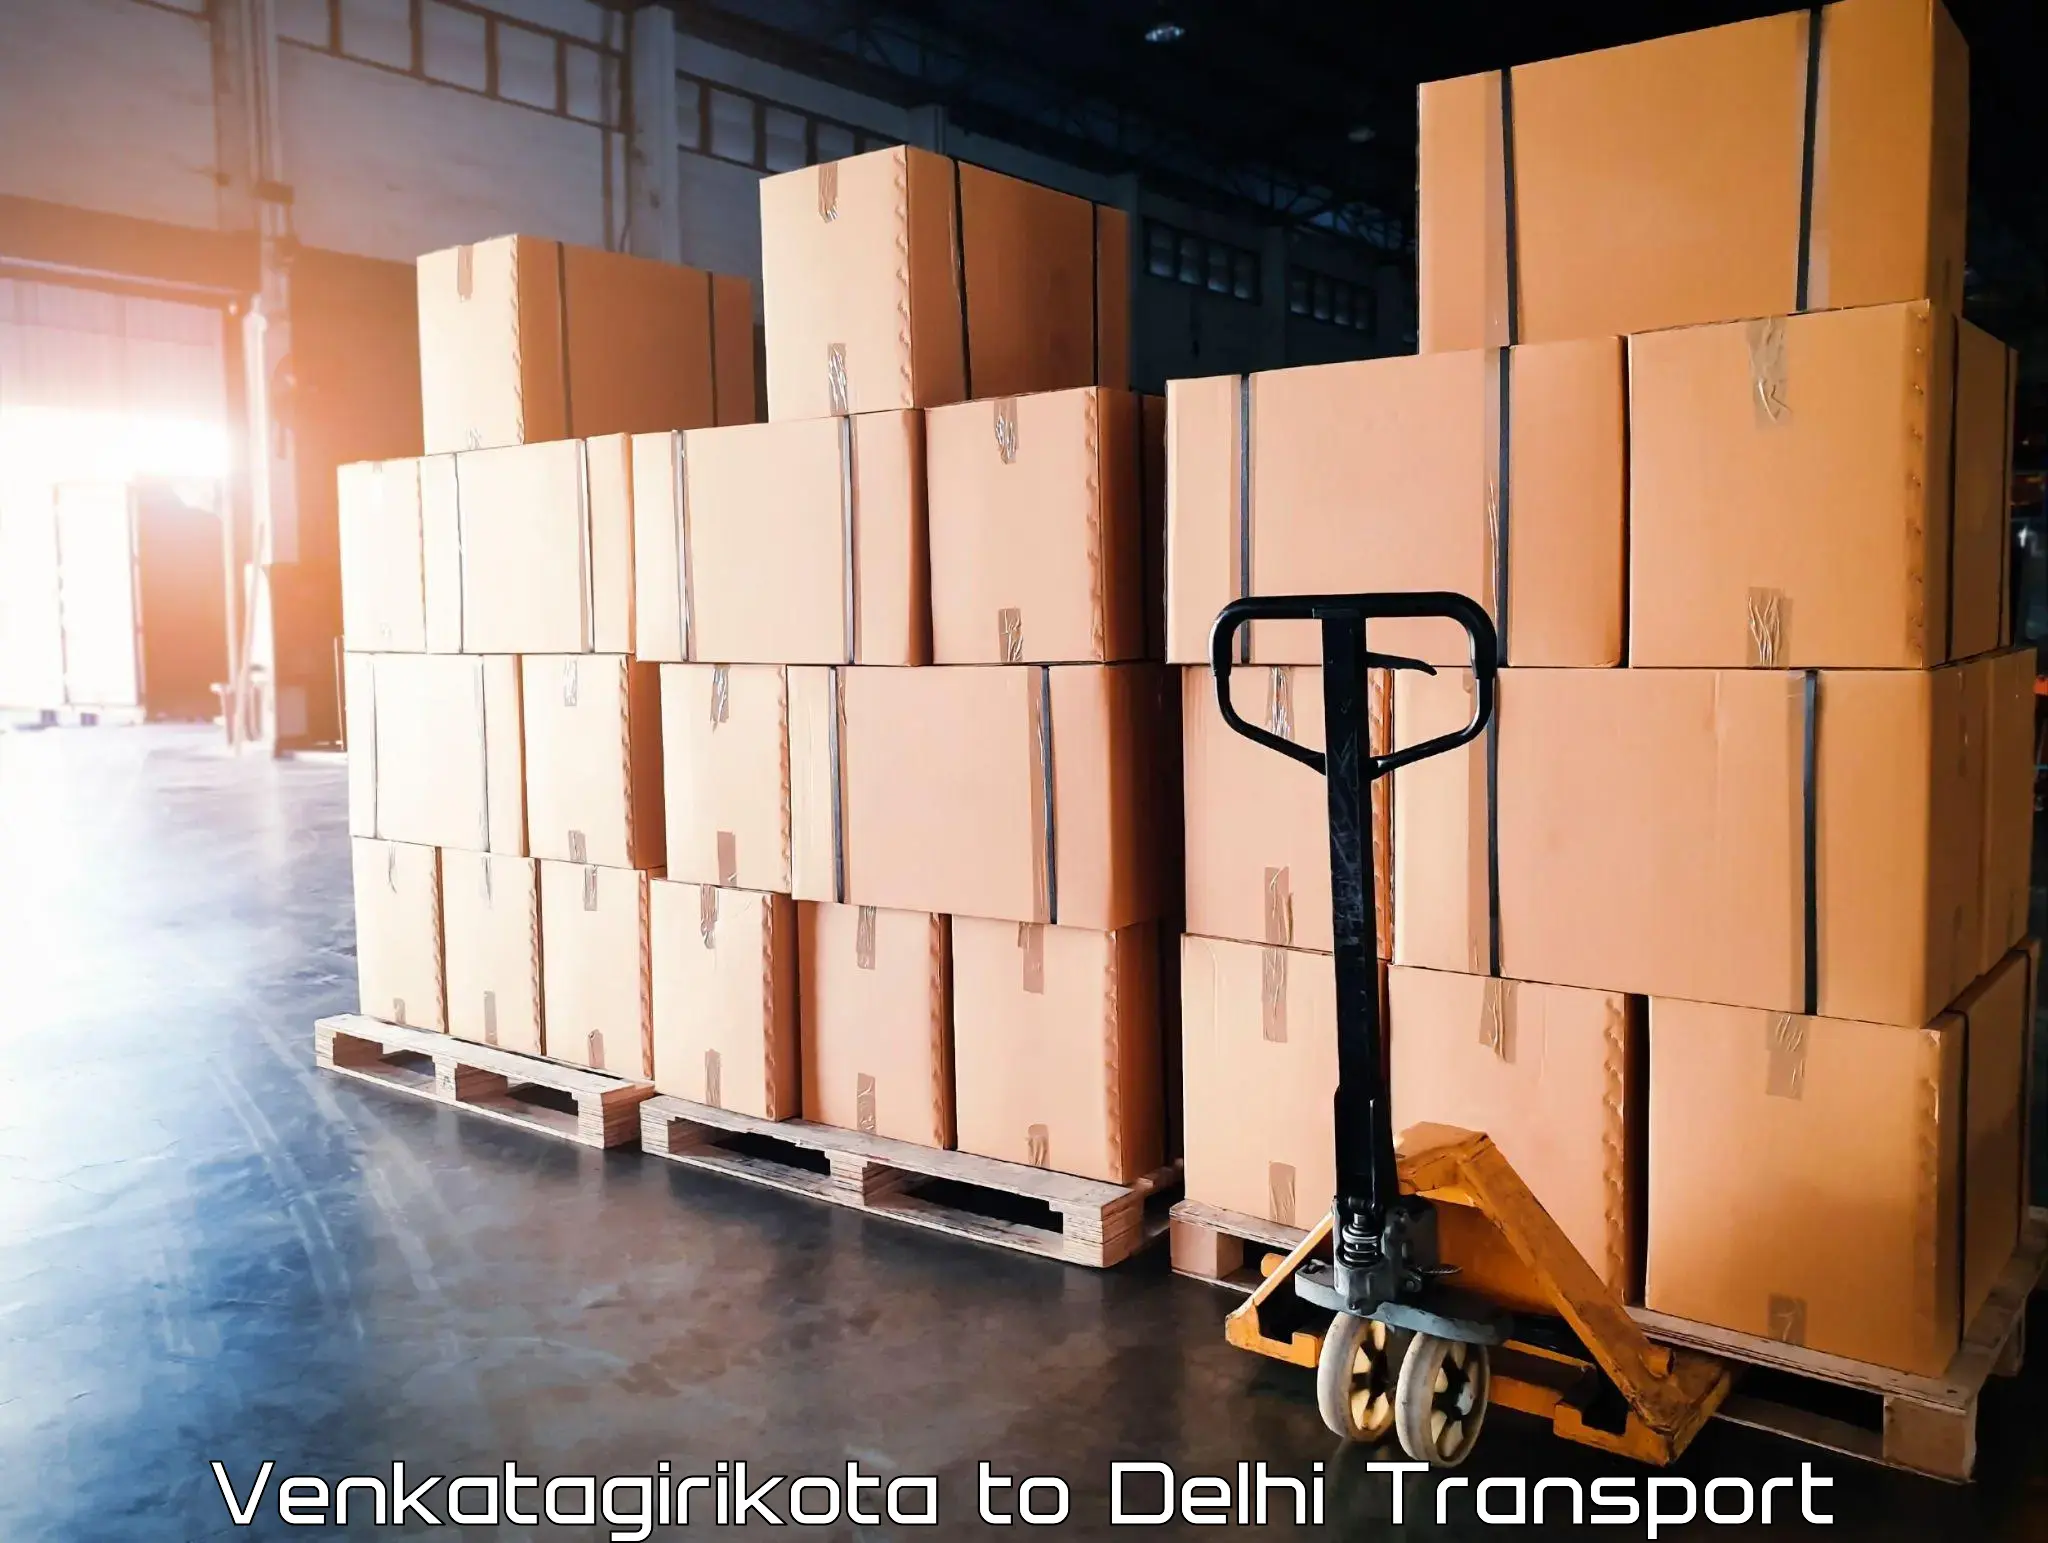 Land transport services Venkatagirikota to Jamia Millia Islamia New Delhi